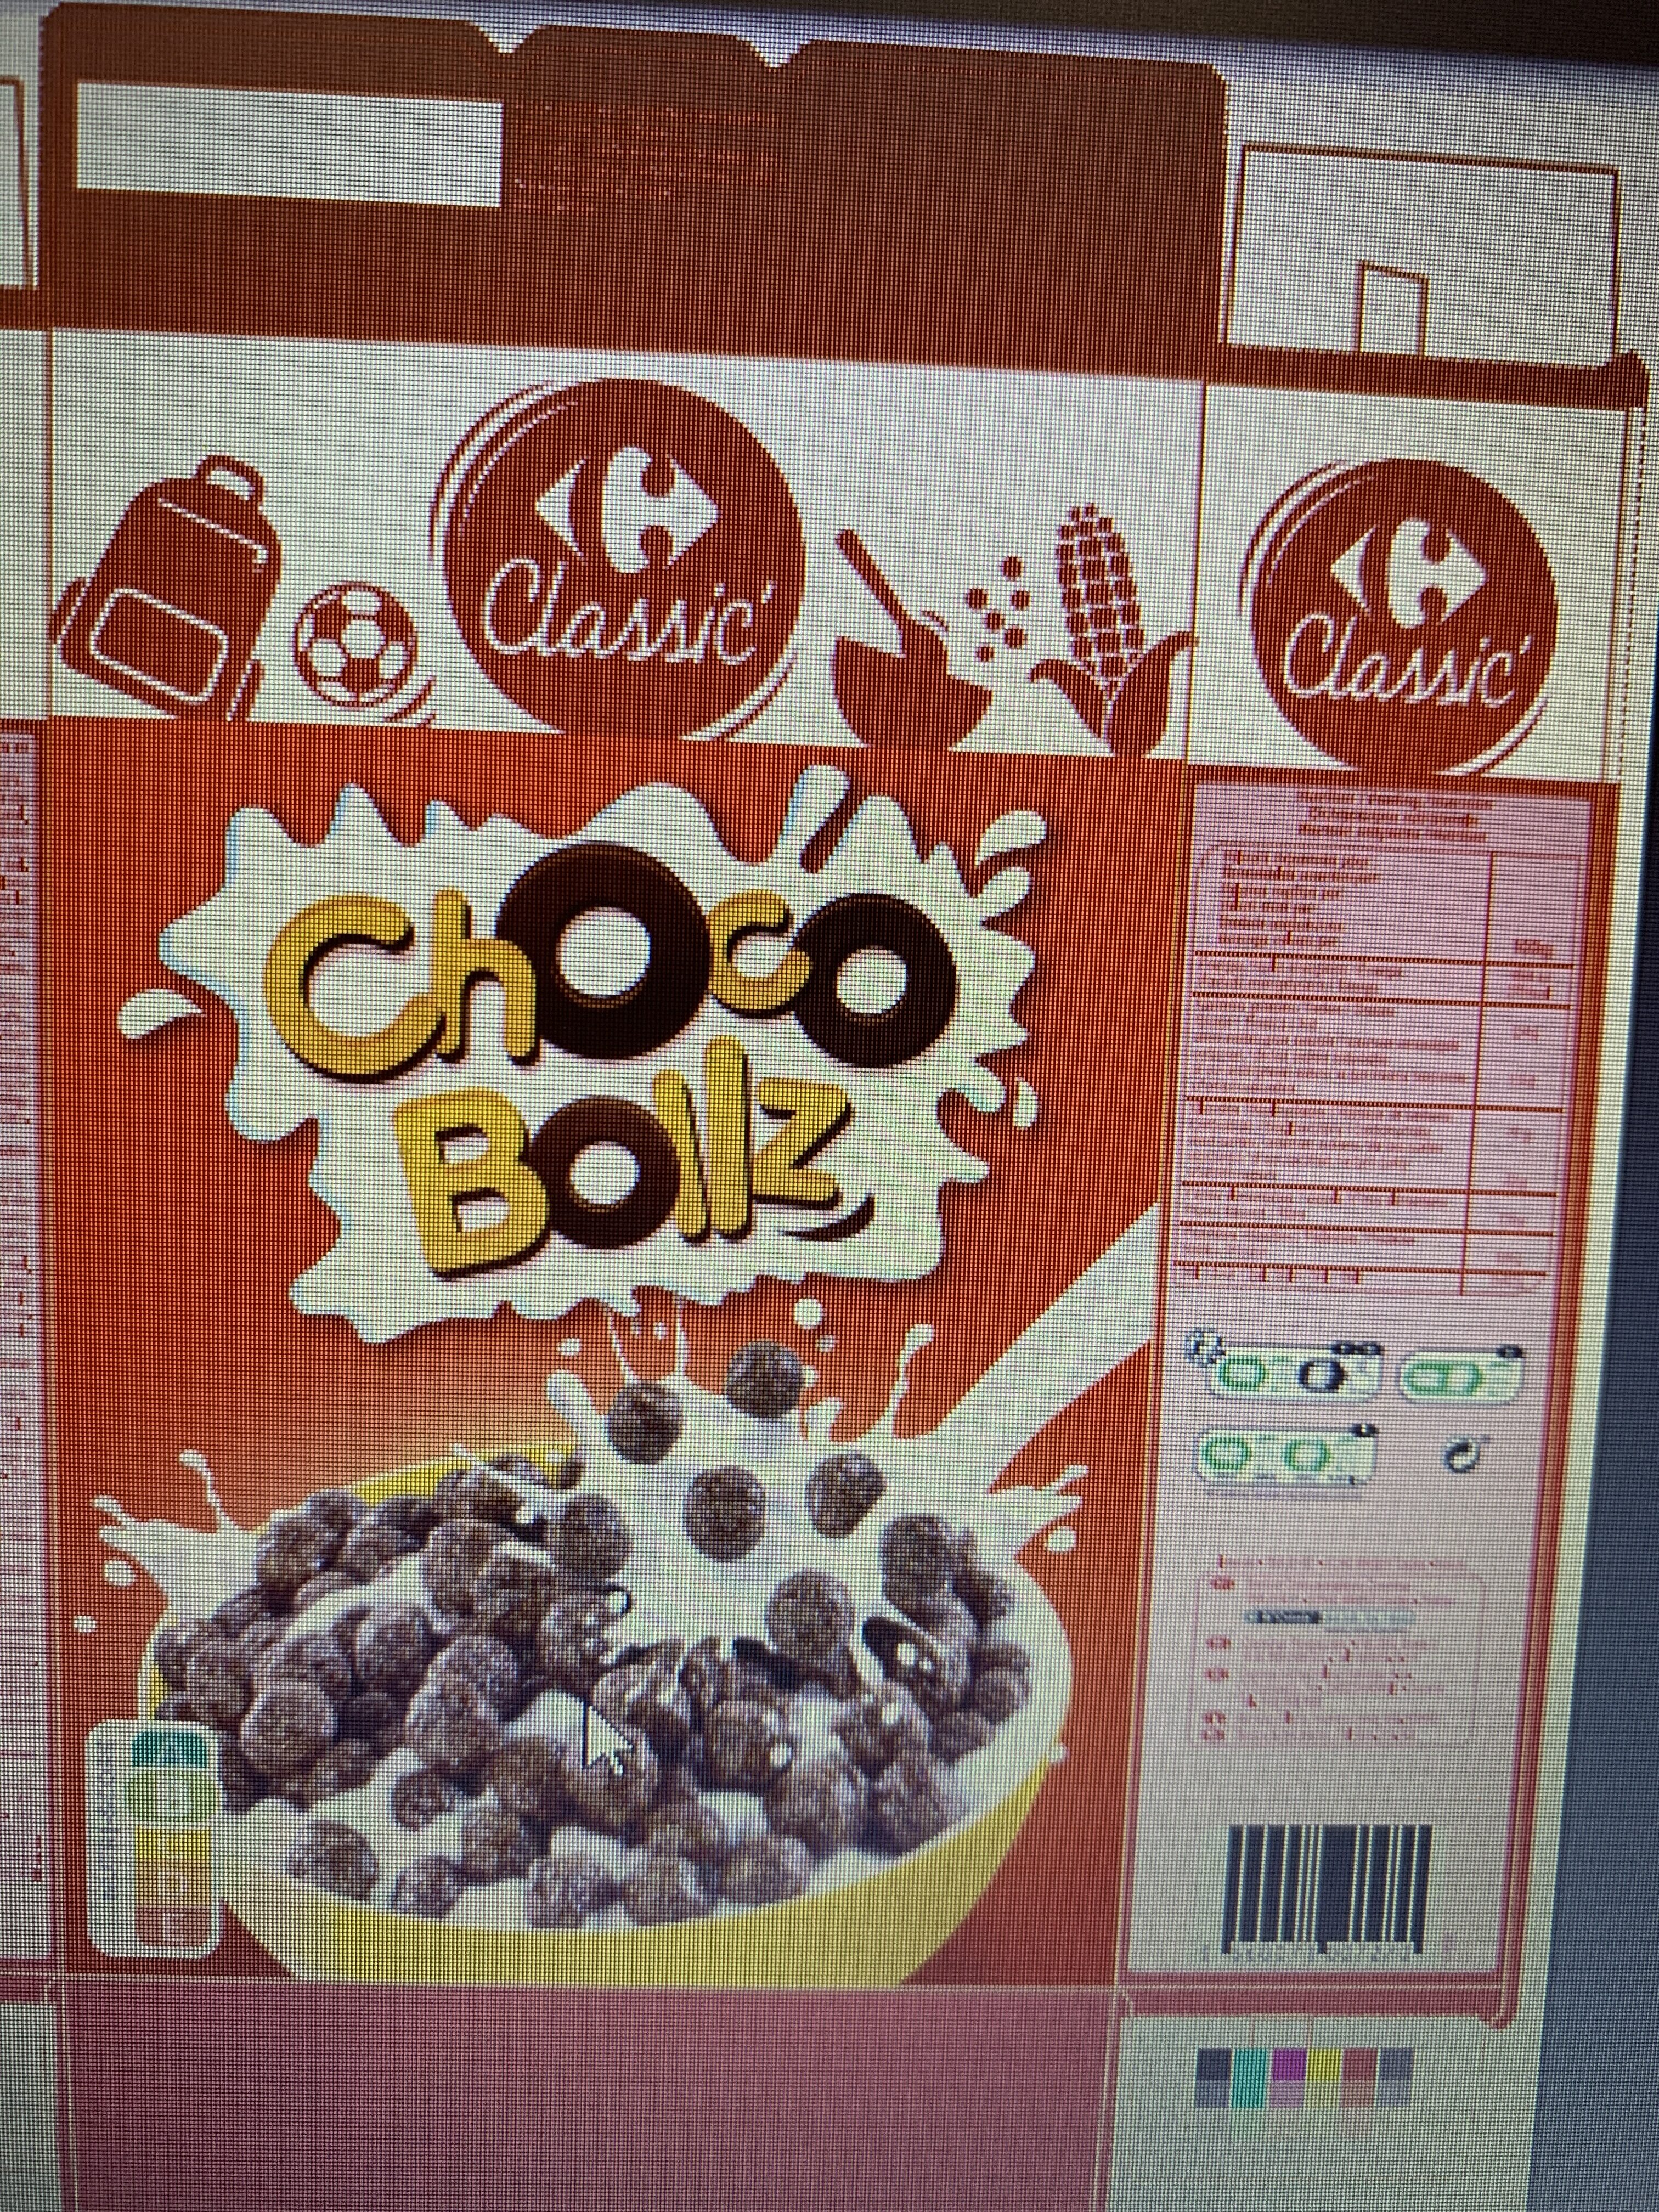 Choco Bollz - Product - fr